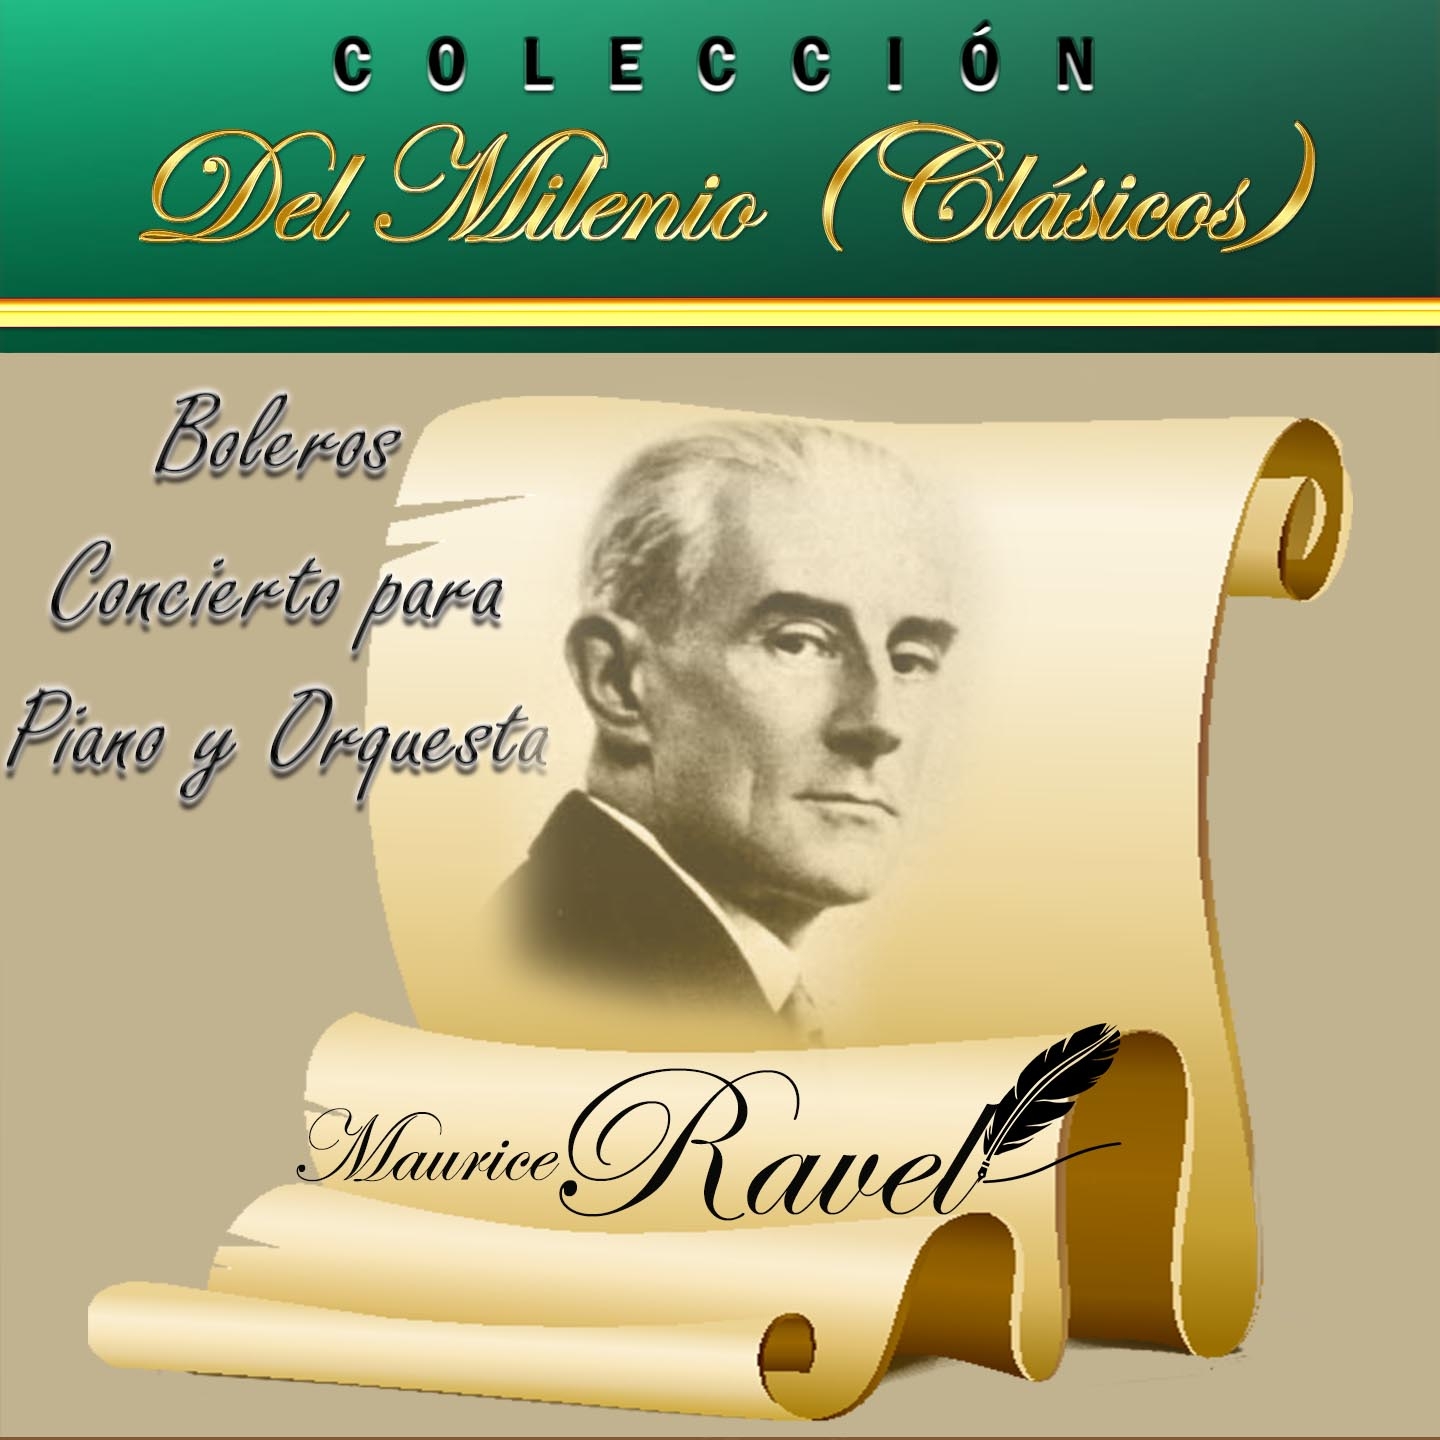 Coleccio n del Milenio Cla sicos, Bolero, Concierto para Piano y Orquesta